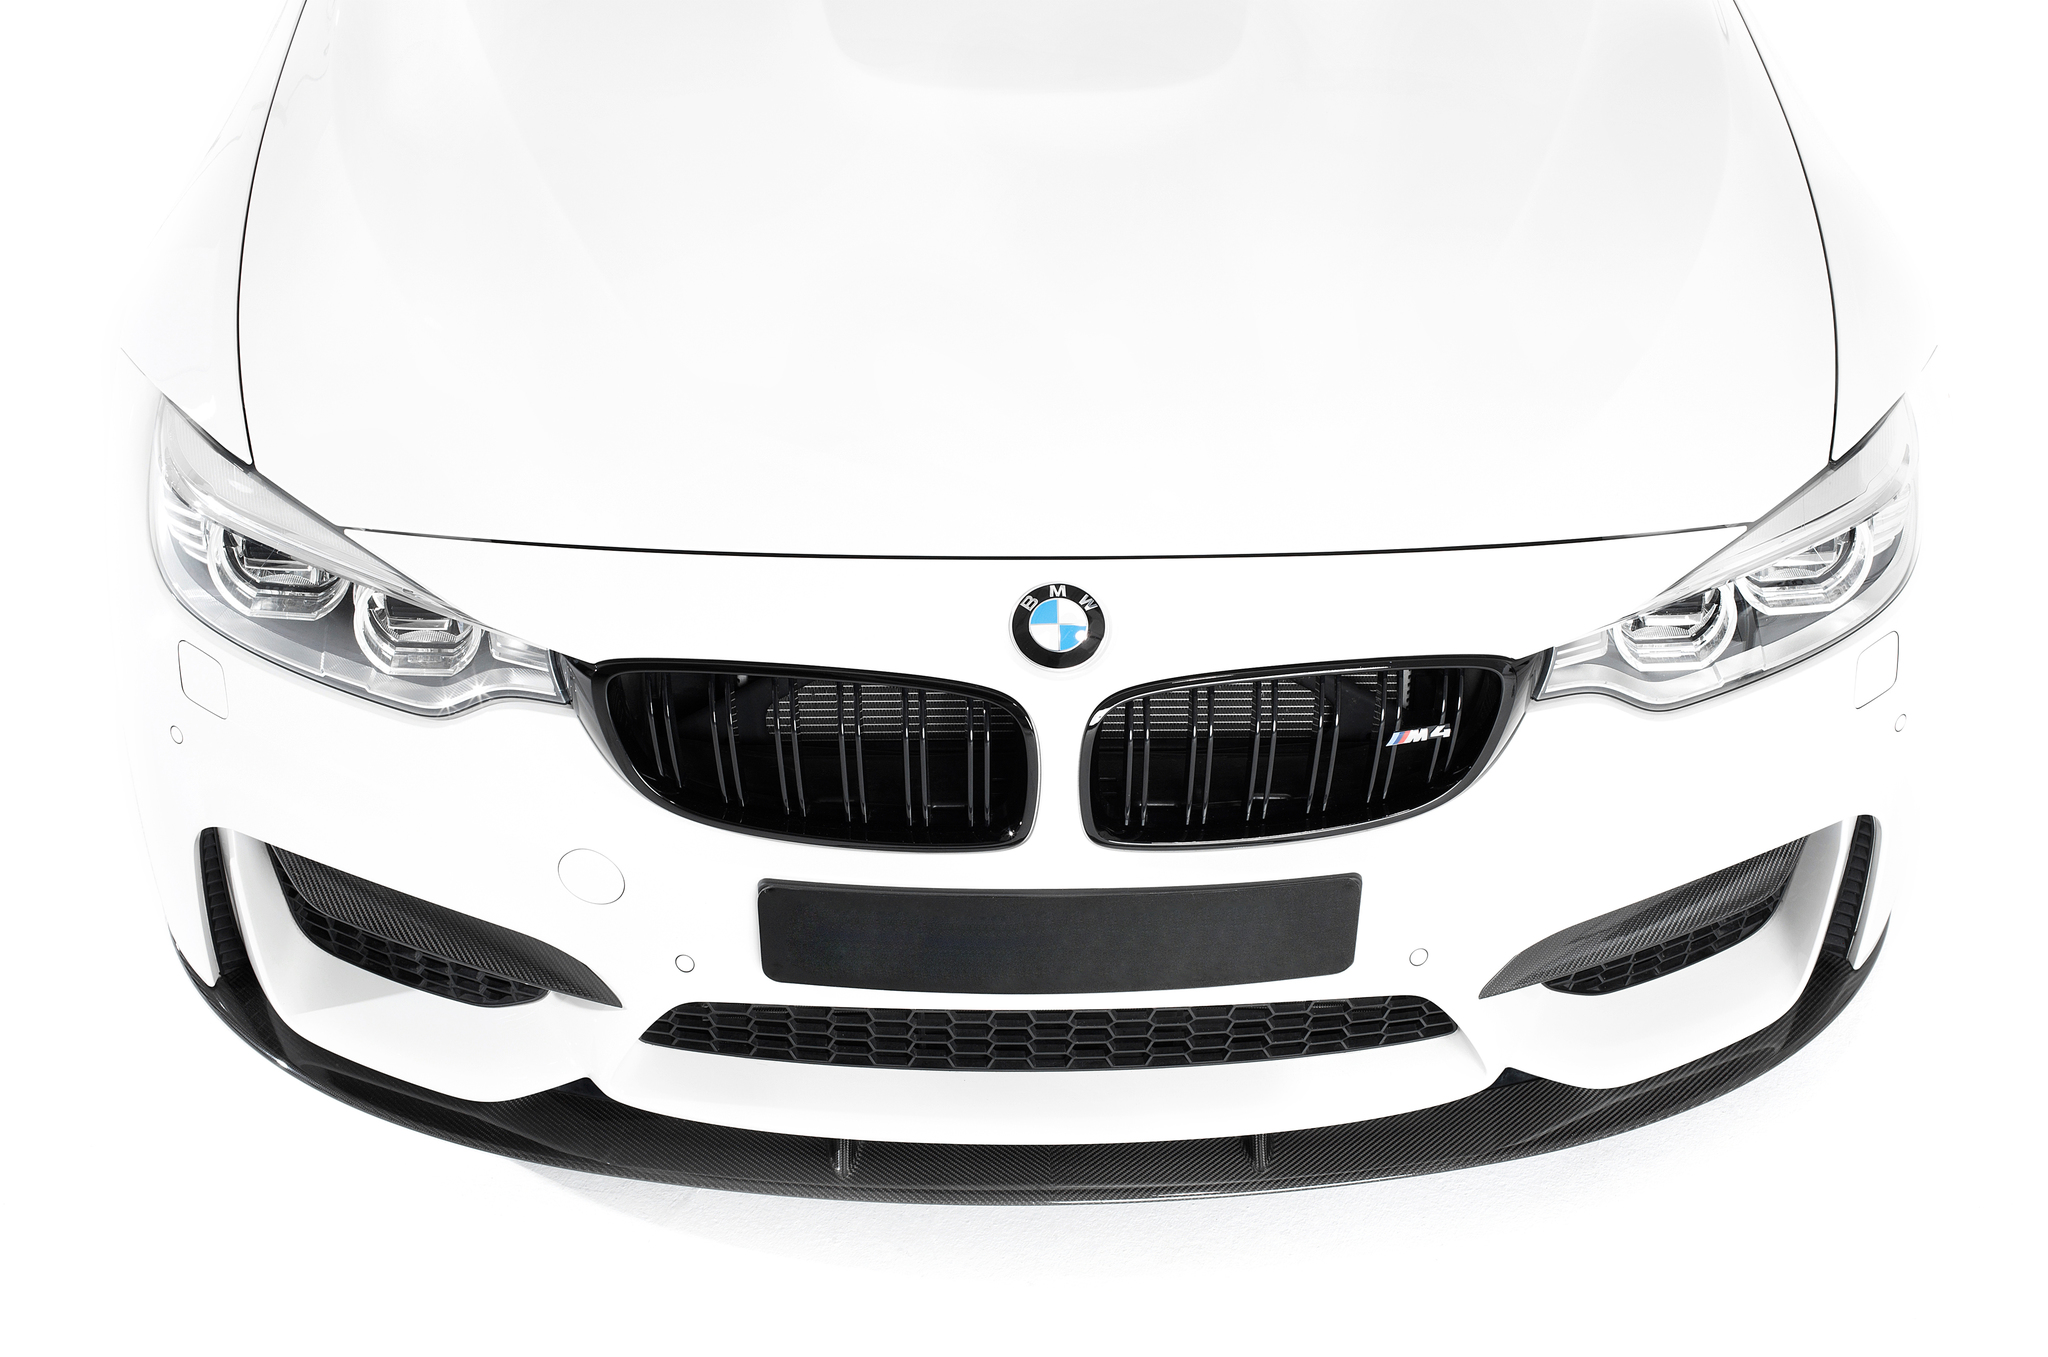 Sterckenn Carbon Fiber front splitter for BMW M4 F82 new model